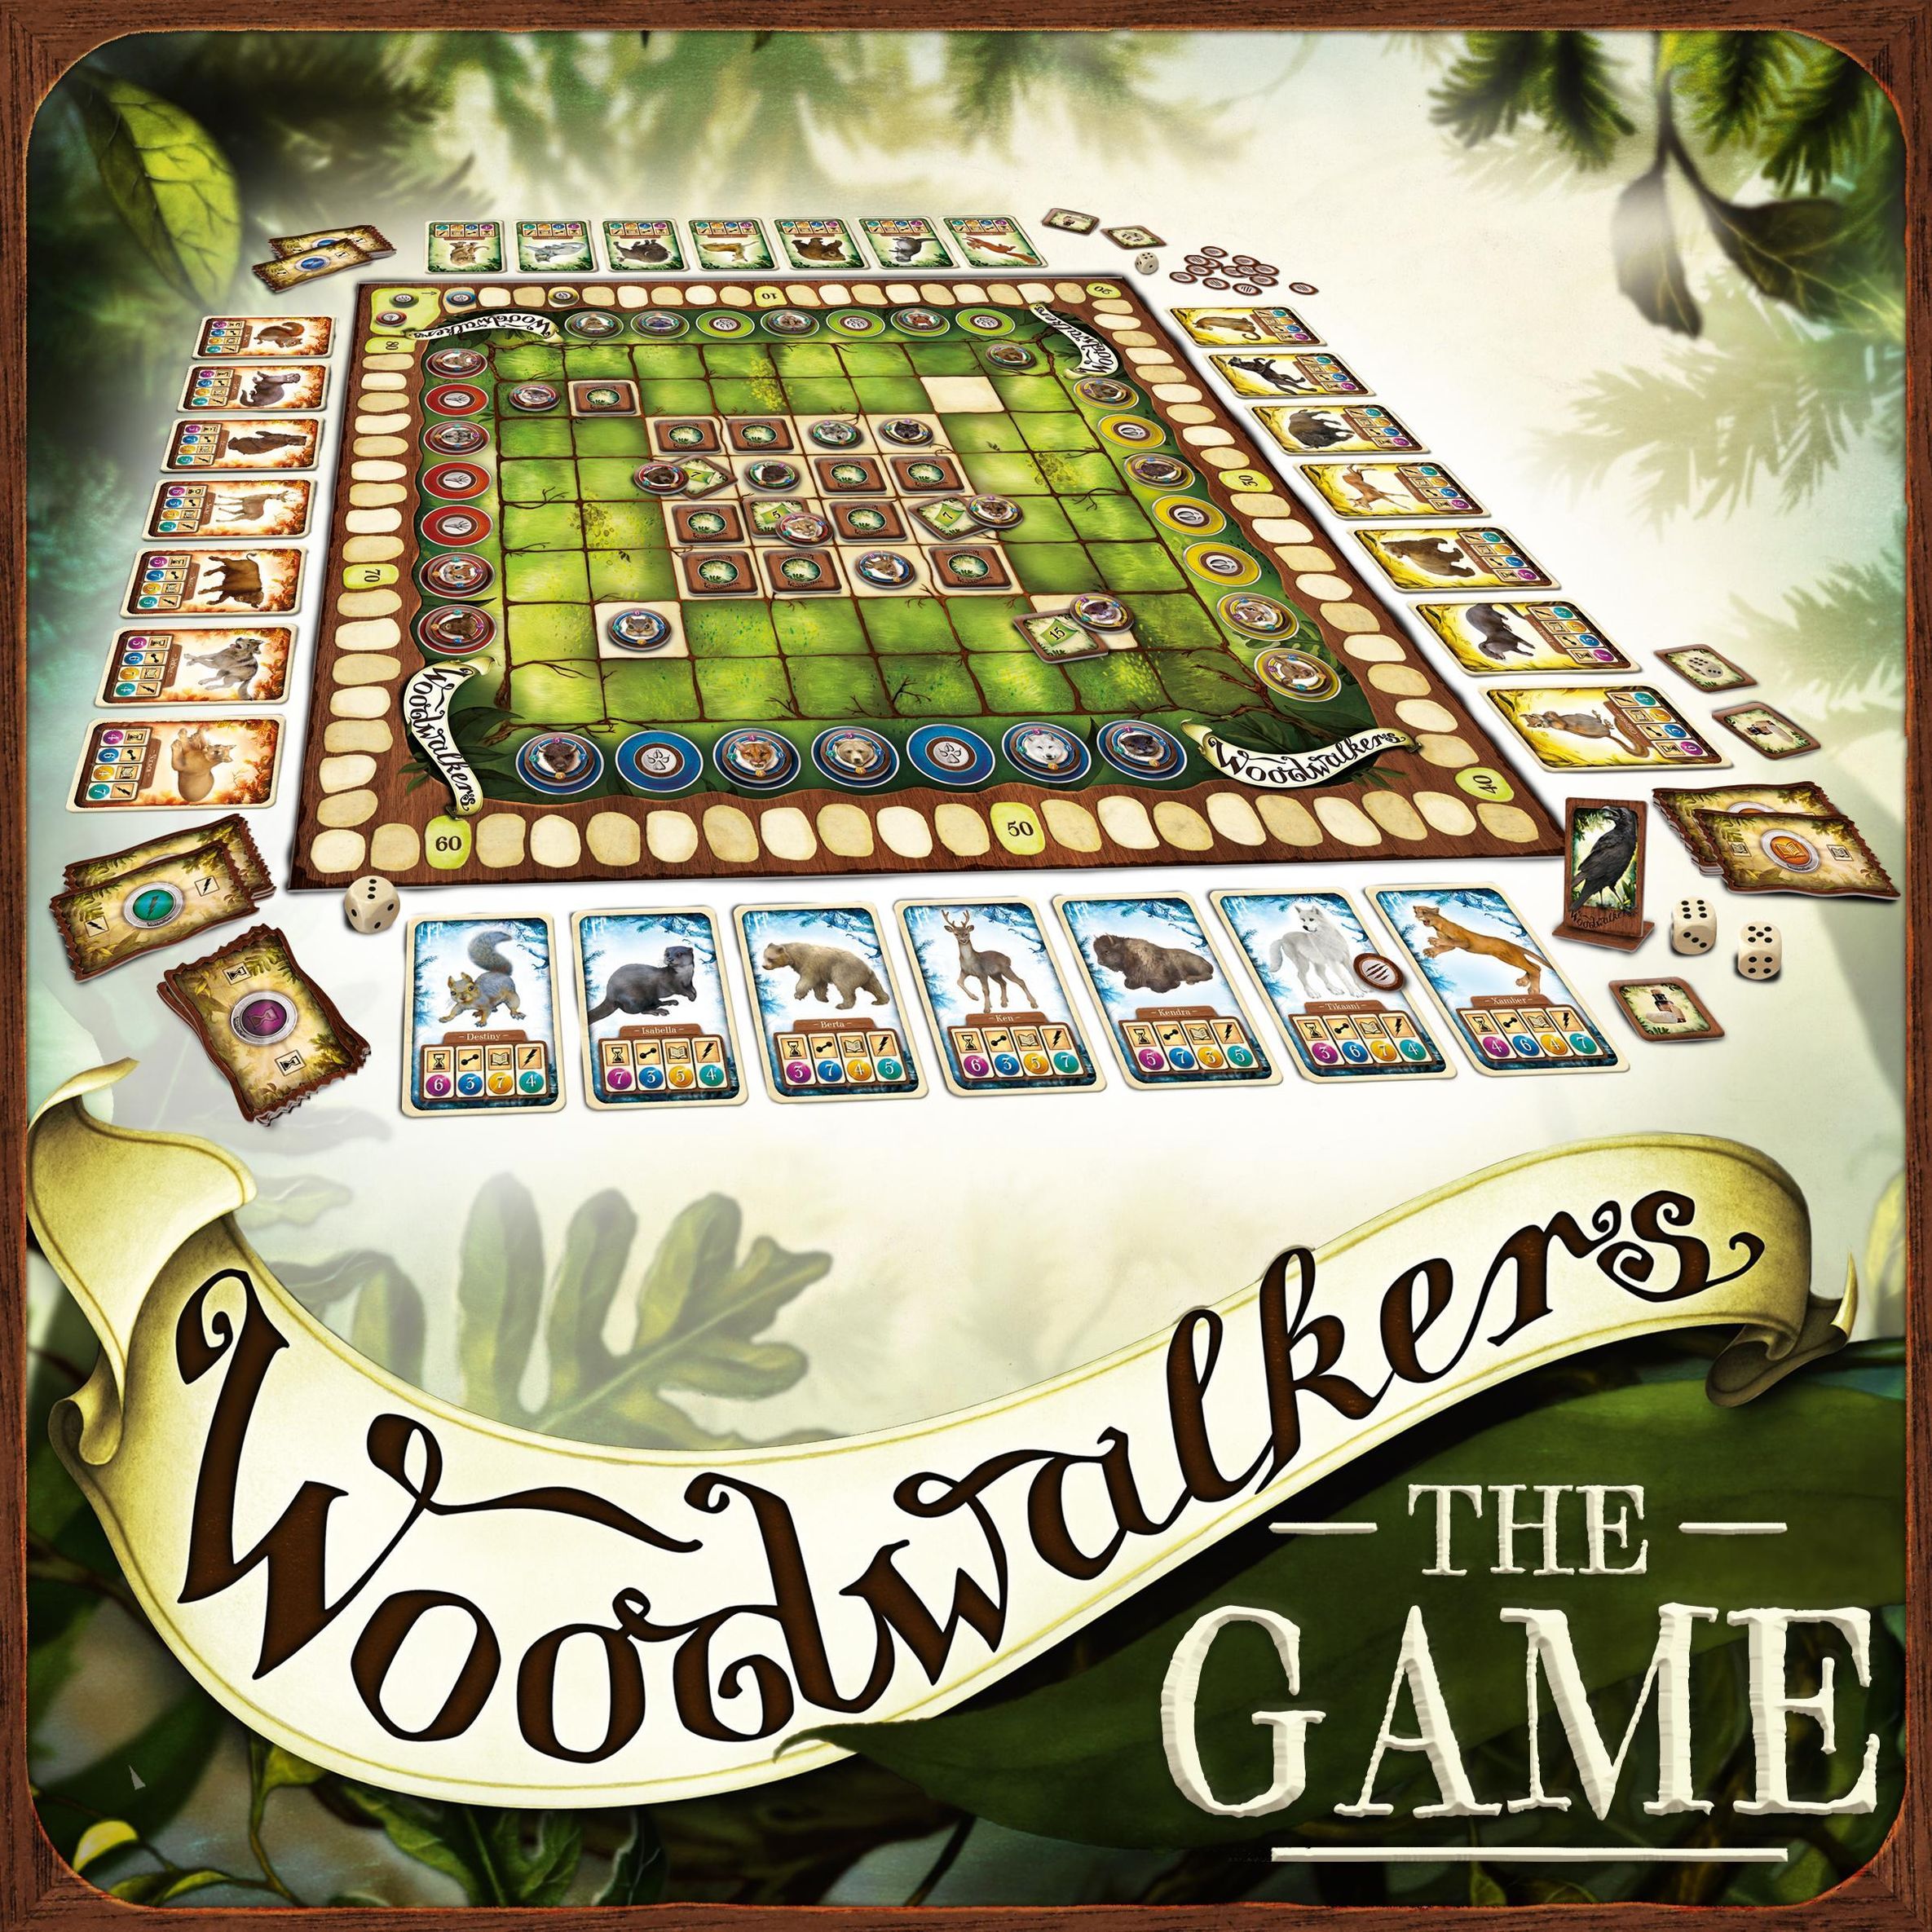 Brettspiel WOODWALKERS - THE GAME kaufen | tausendkind.de